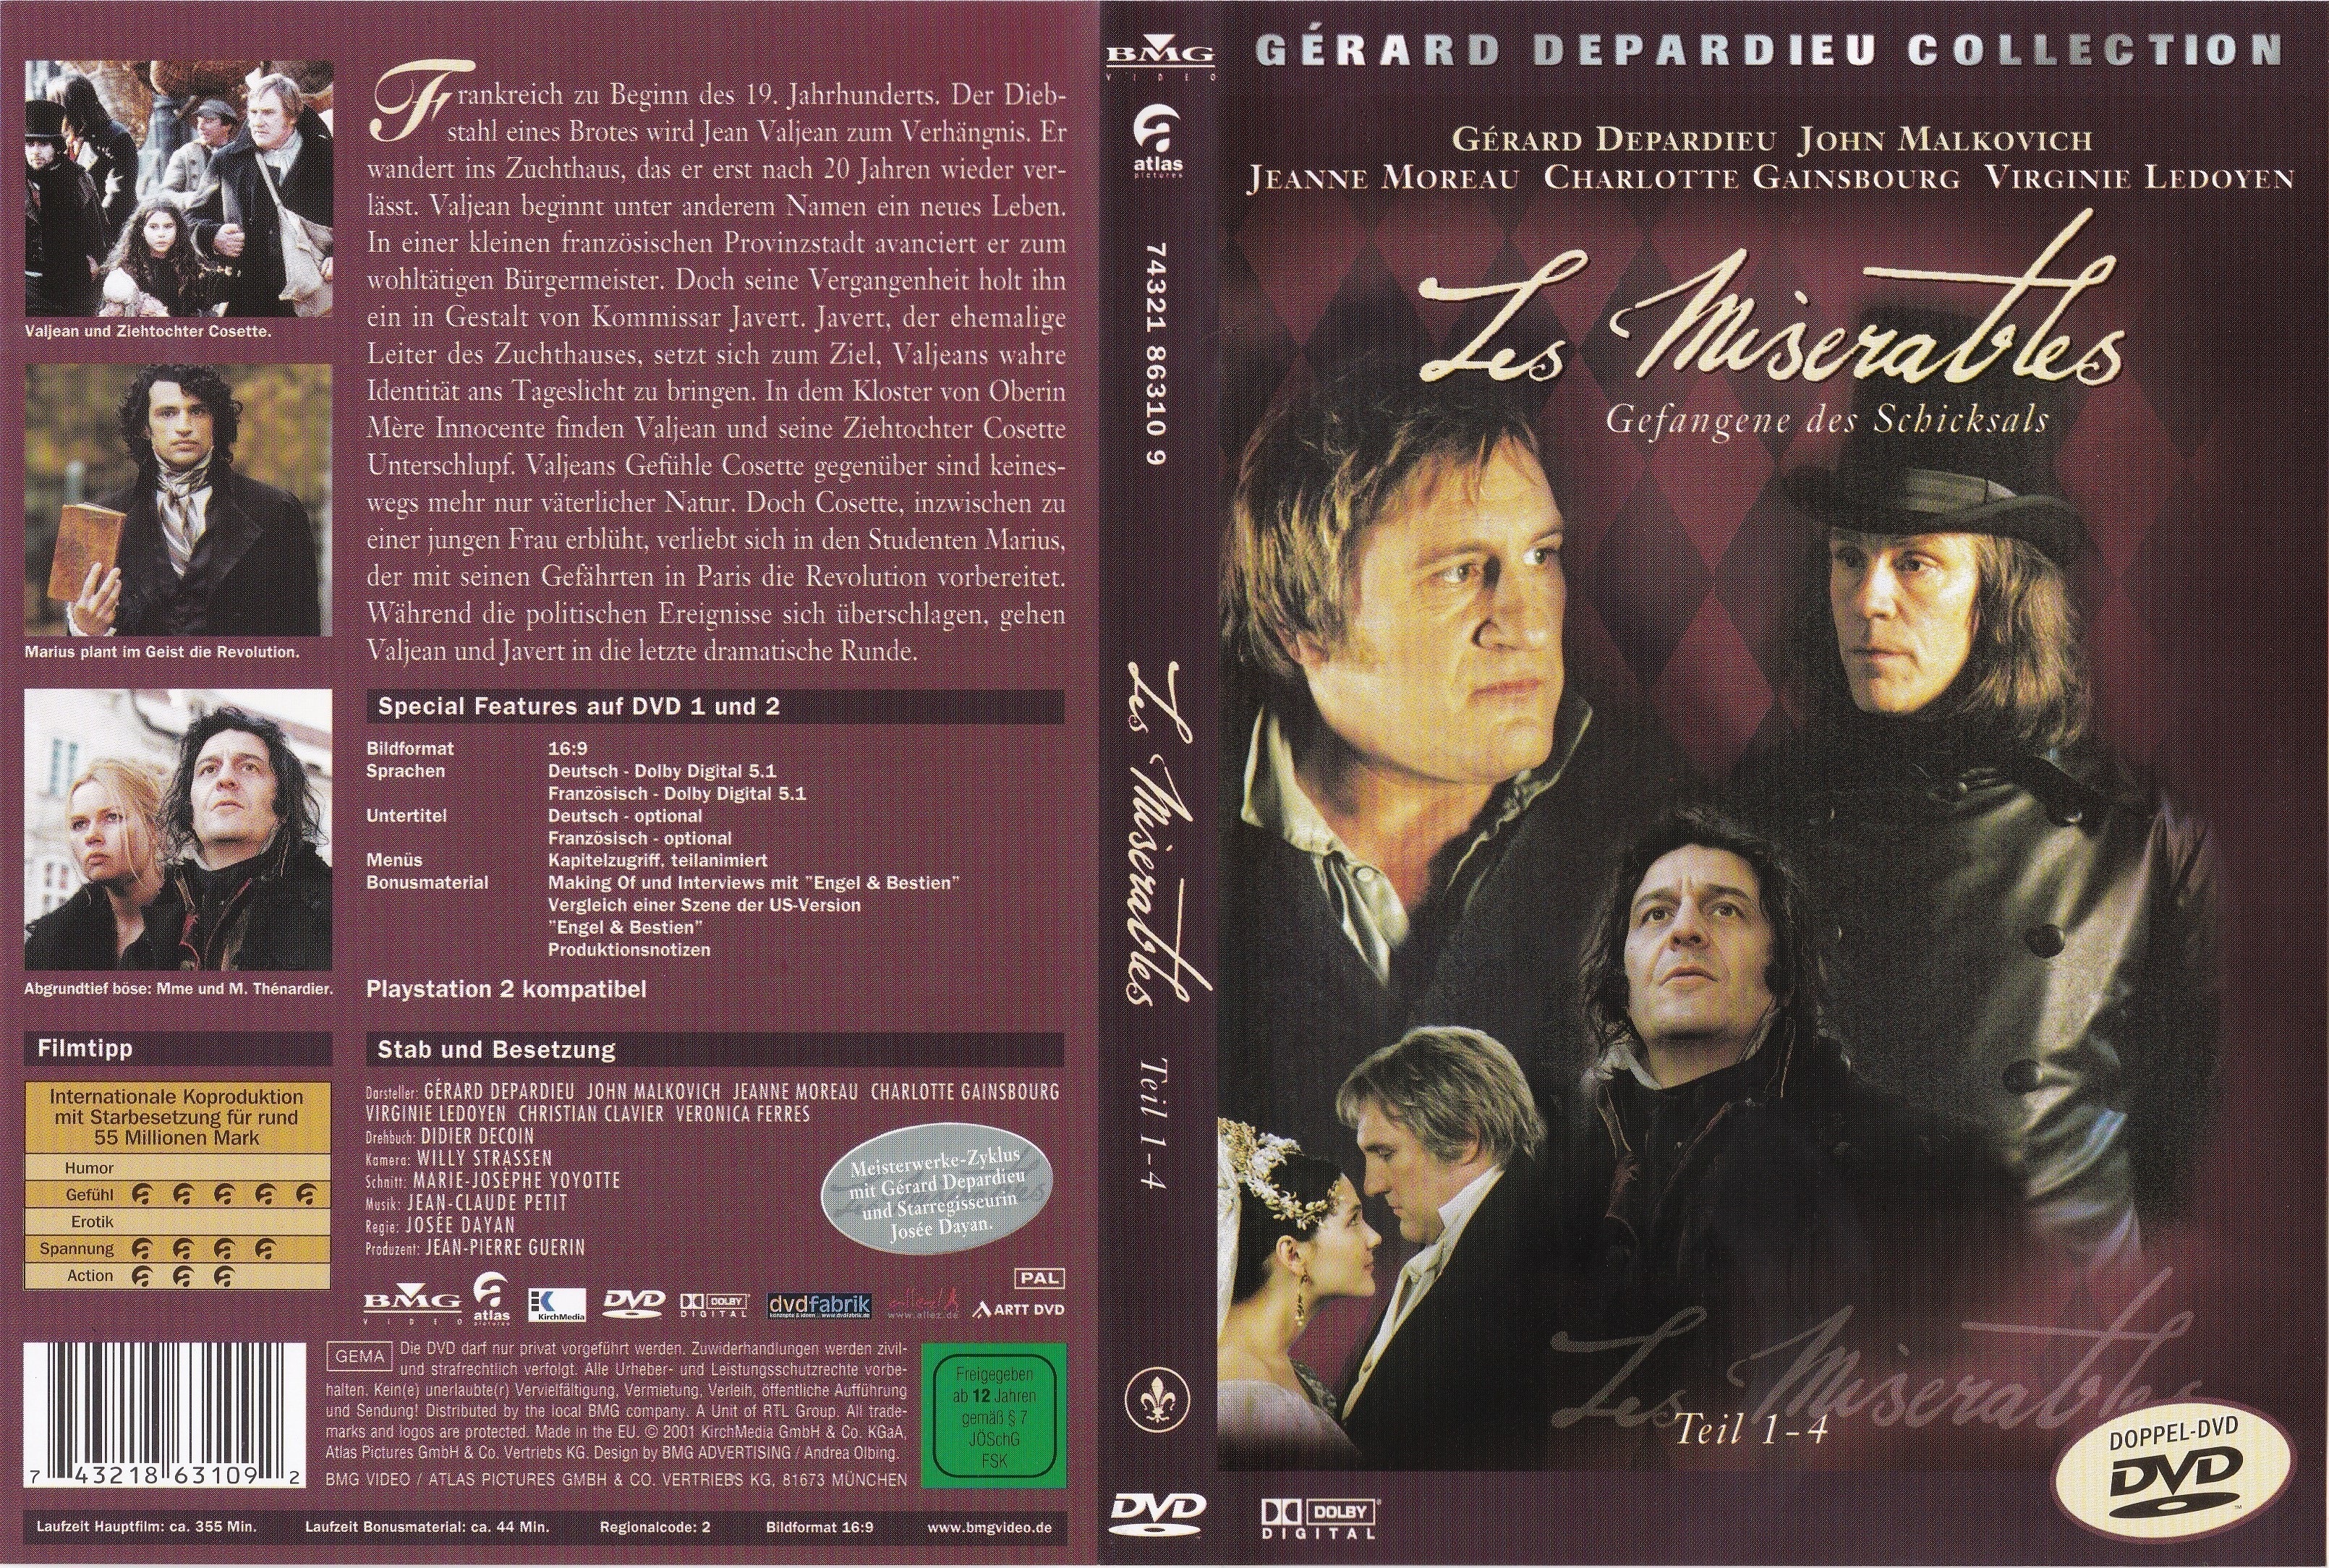 Jaquette DVD Les misrables (Depardieu) v2